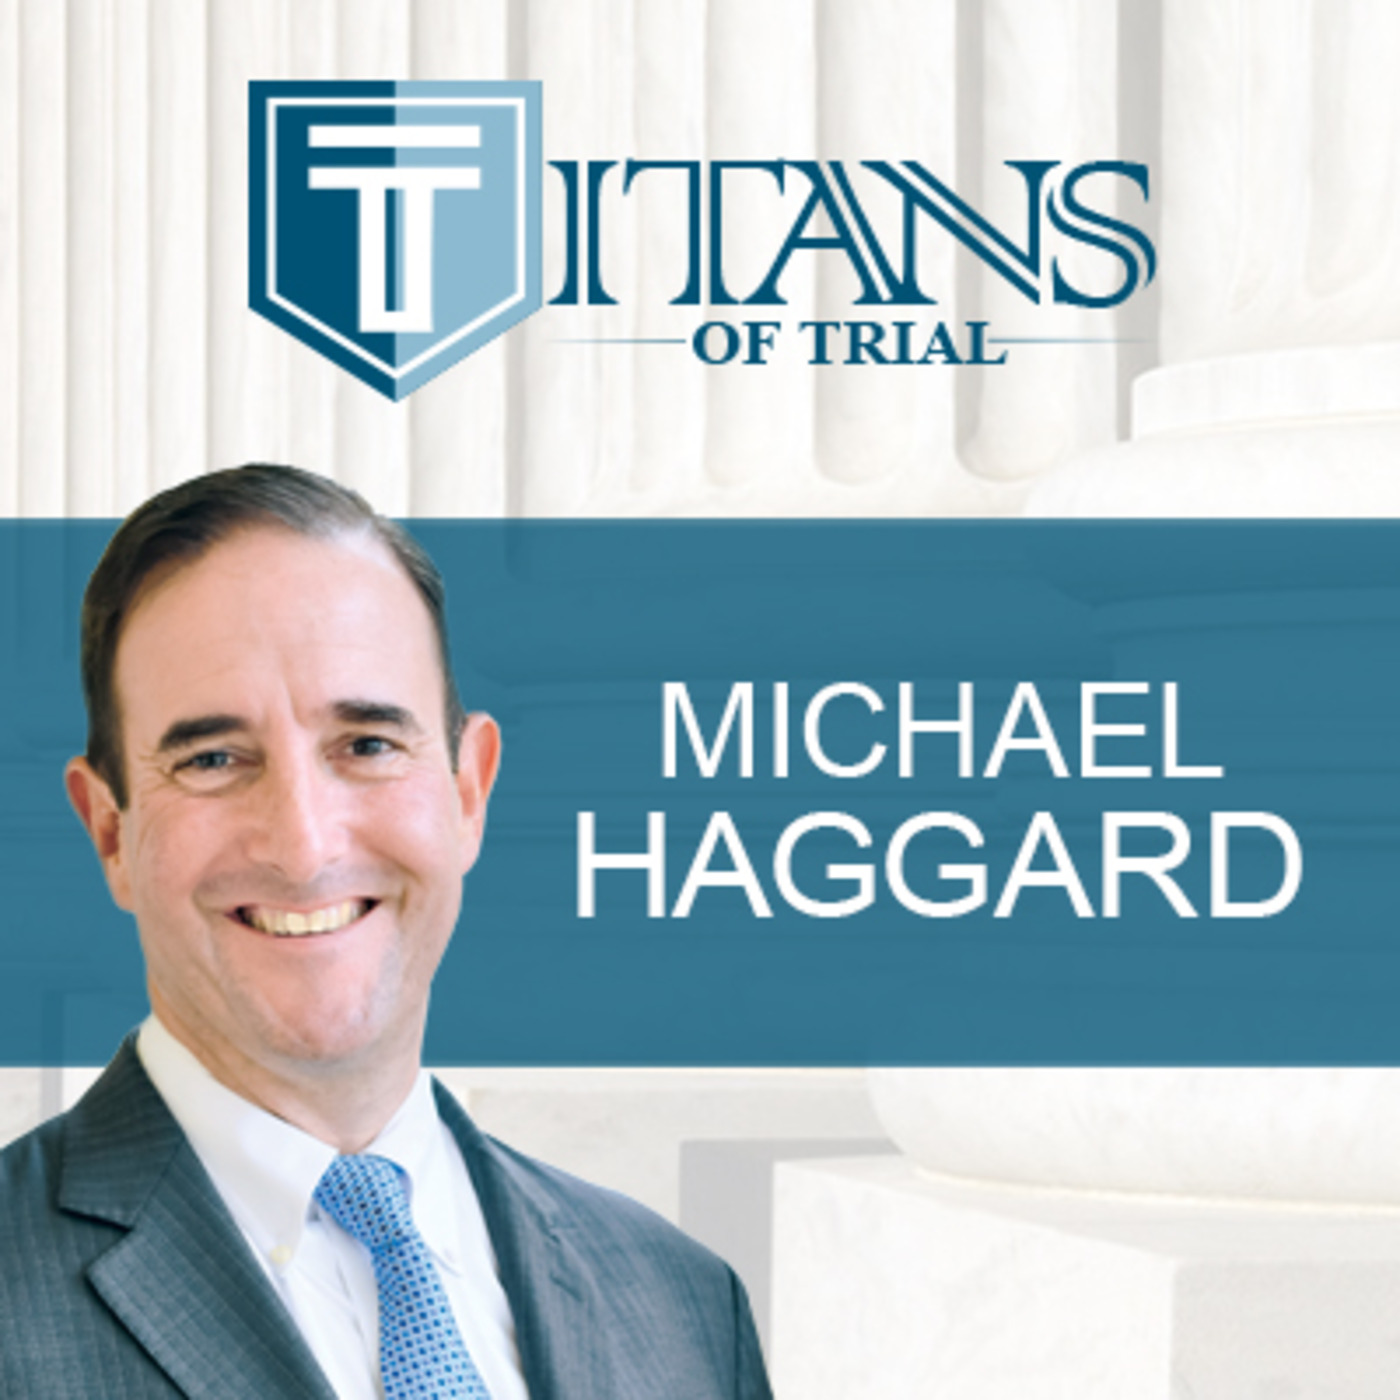 Titans of Trial – Michael Haggard